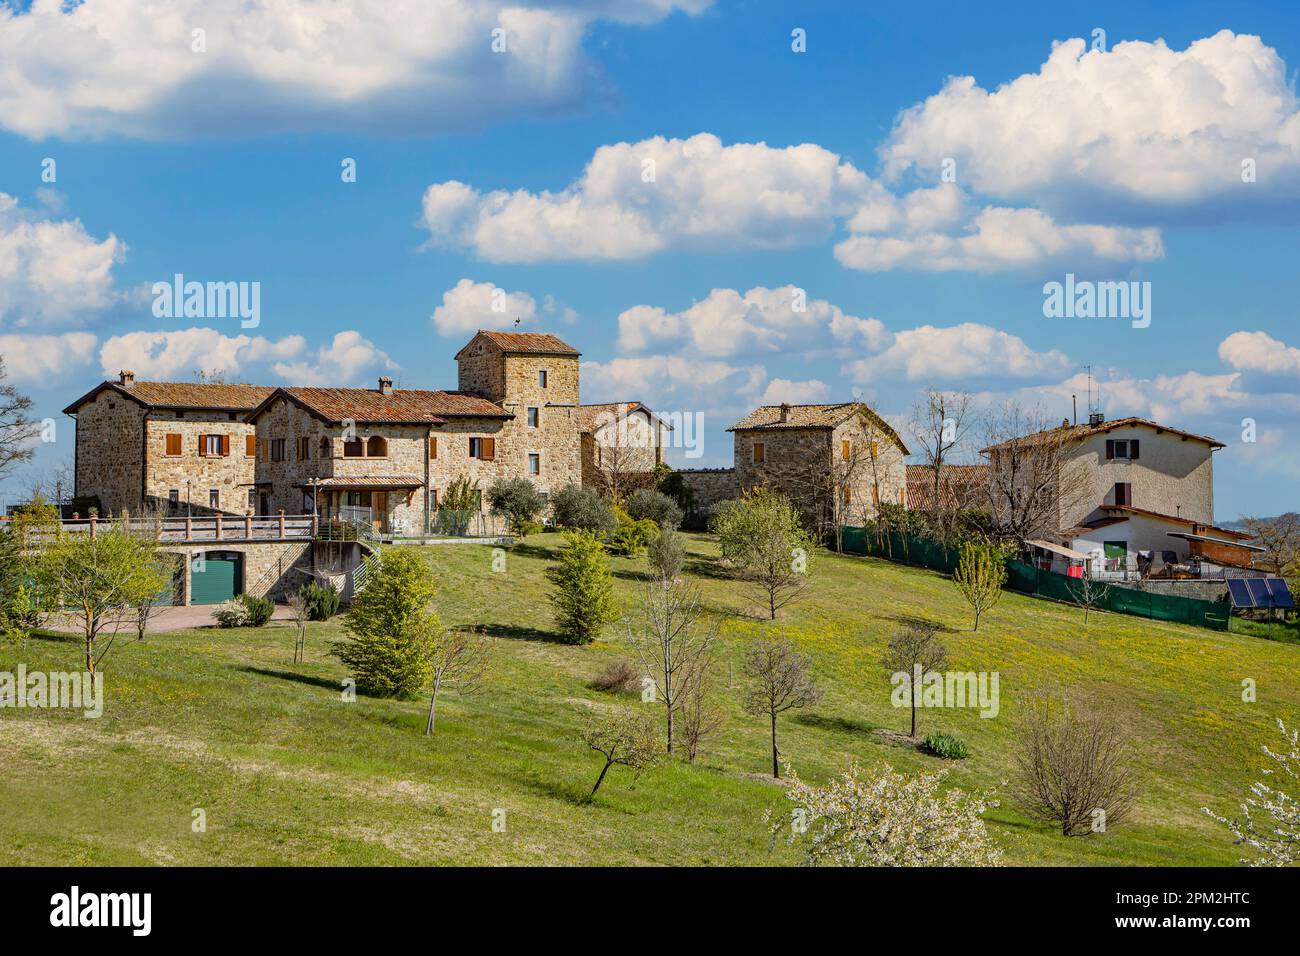 Village rural dans les Apennines Emiliennes toscanes Italie Banque D'Images